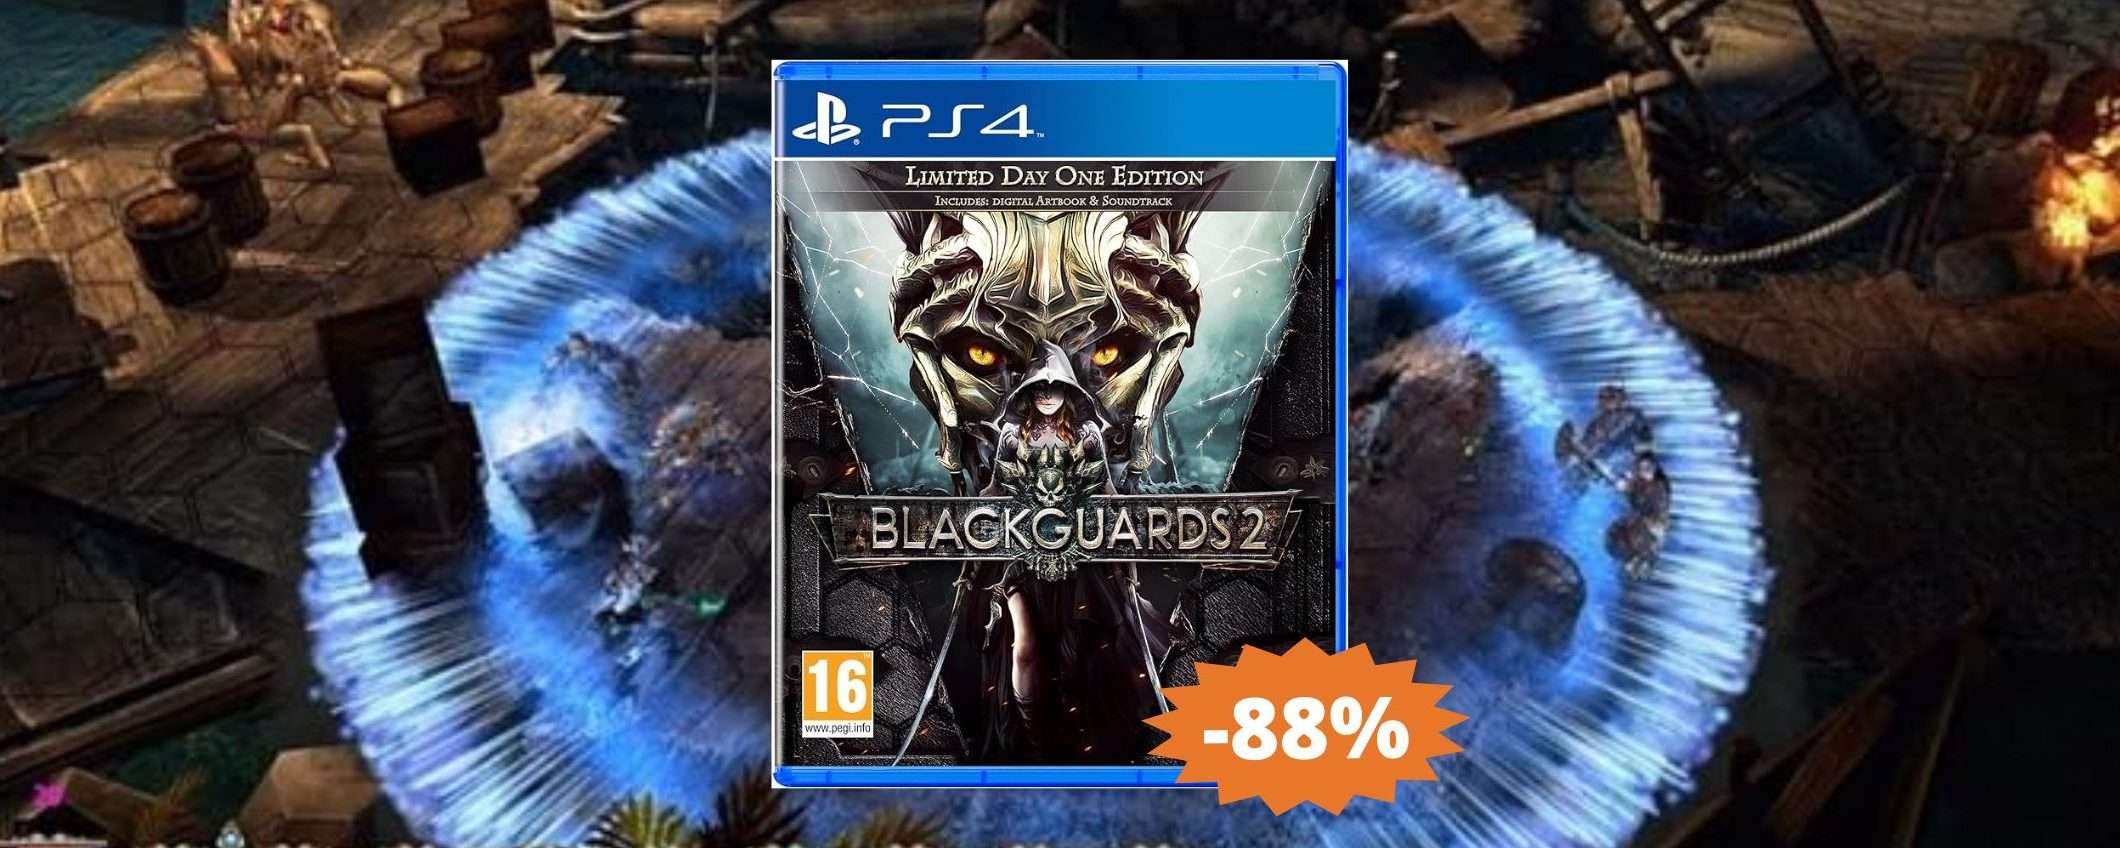 Blackguards 2 per PS4: prezzo BOMBA su Amazon (-88%)